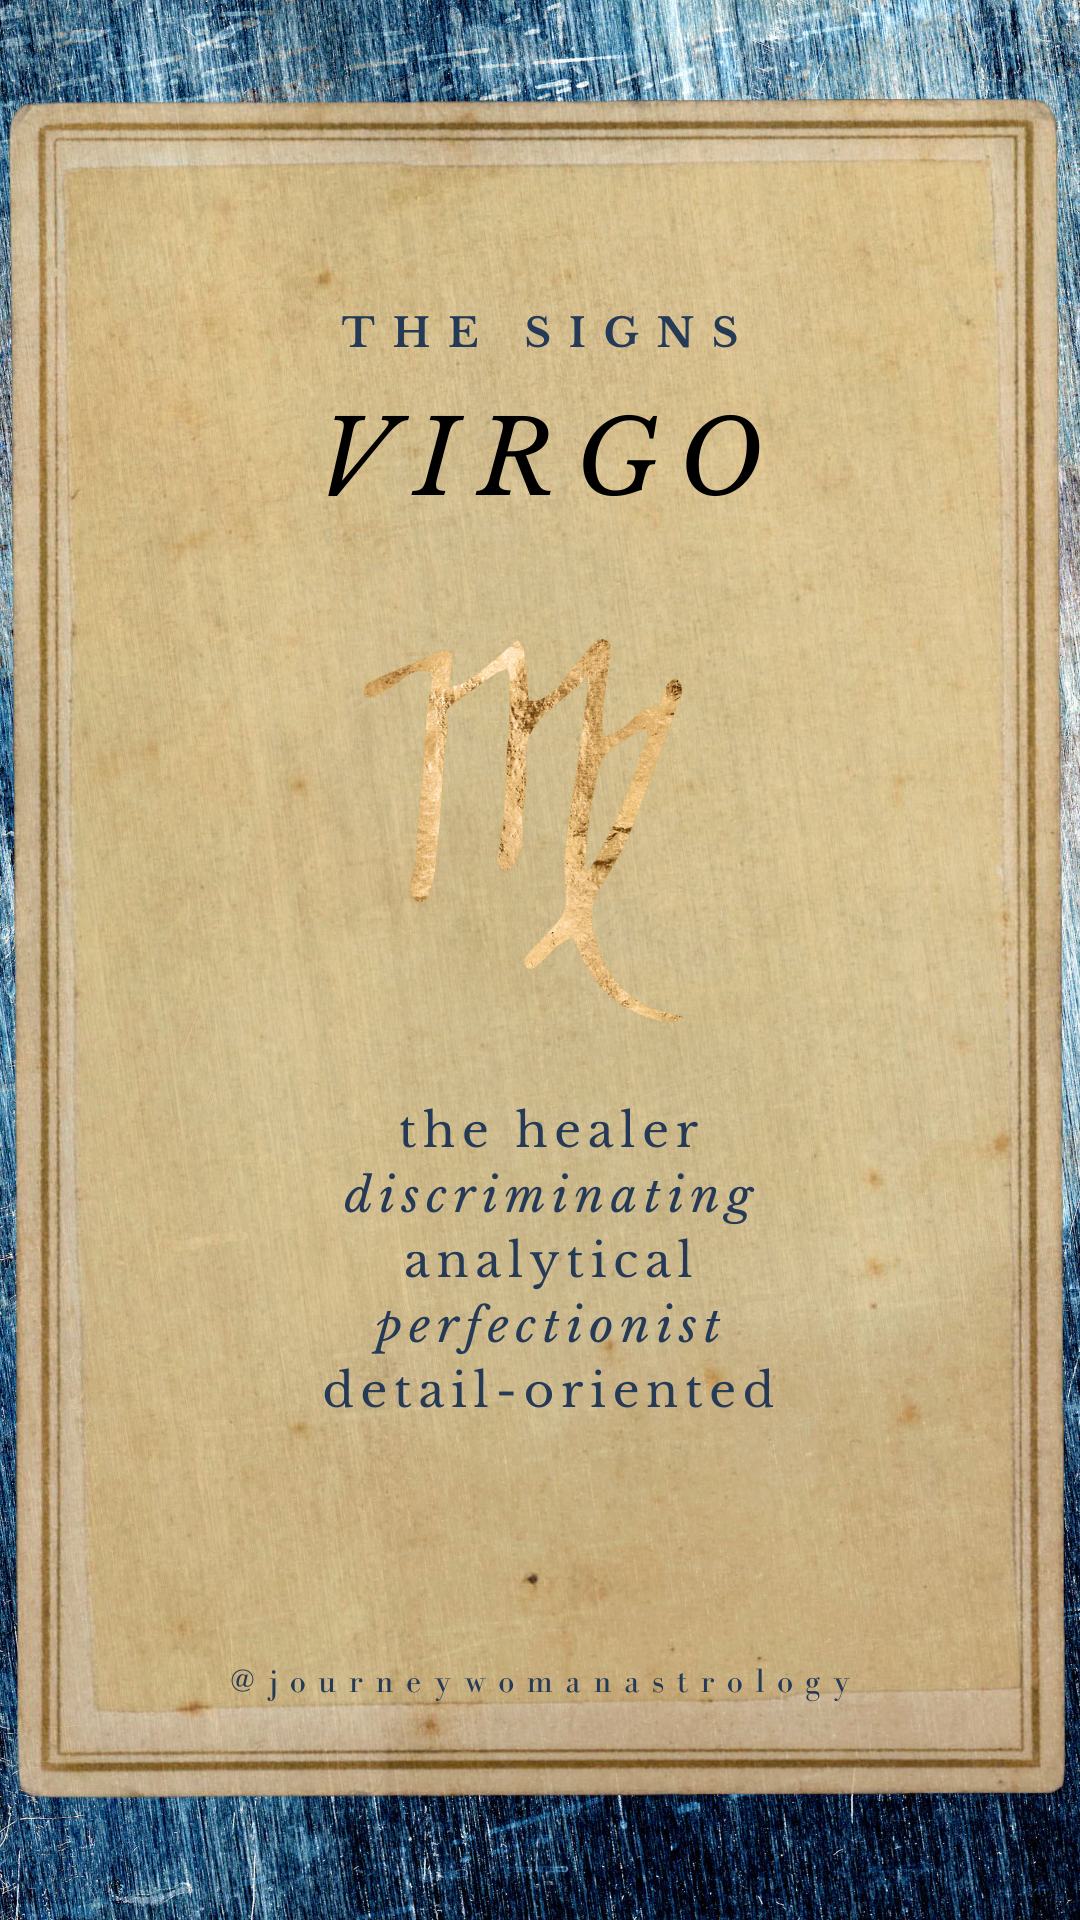 Virgo traits